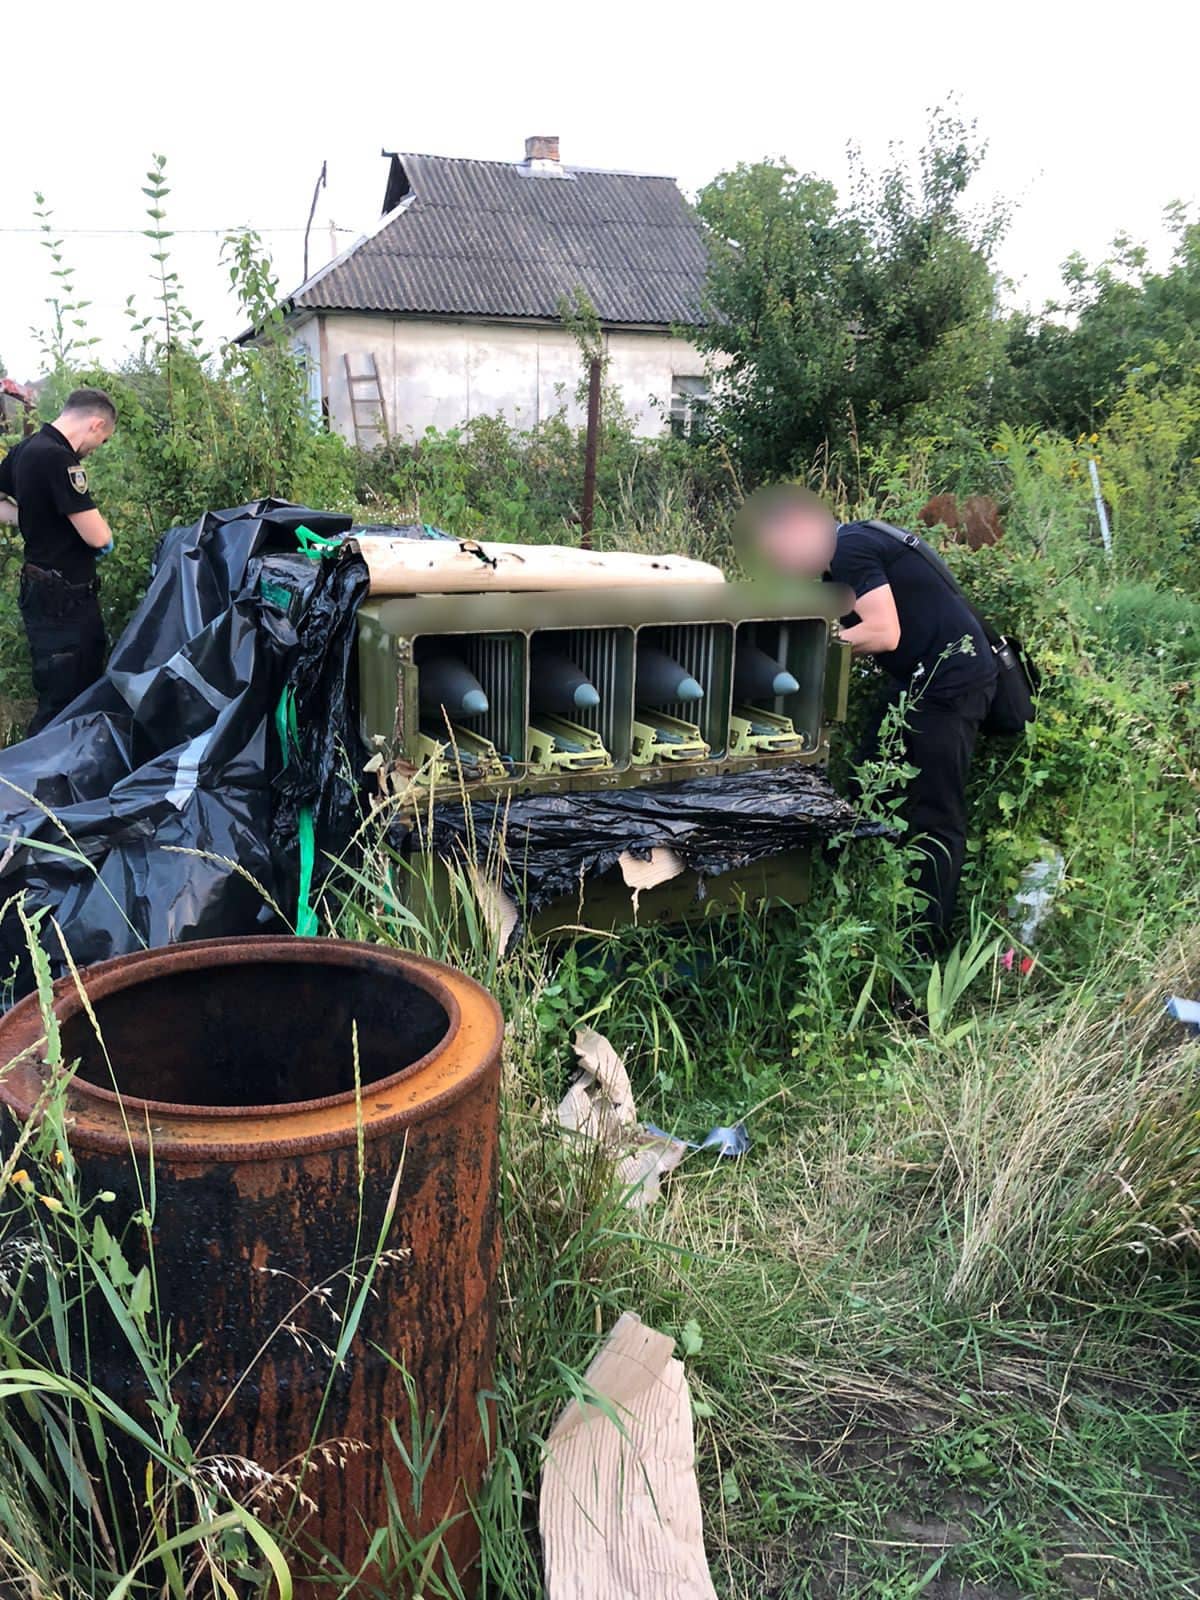 Ukrajinská národní policie vyšetřuje rakety protivzdušné obrany Tor, které objevila.  (foto ukrajinské národní policie)